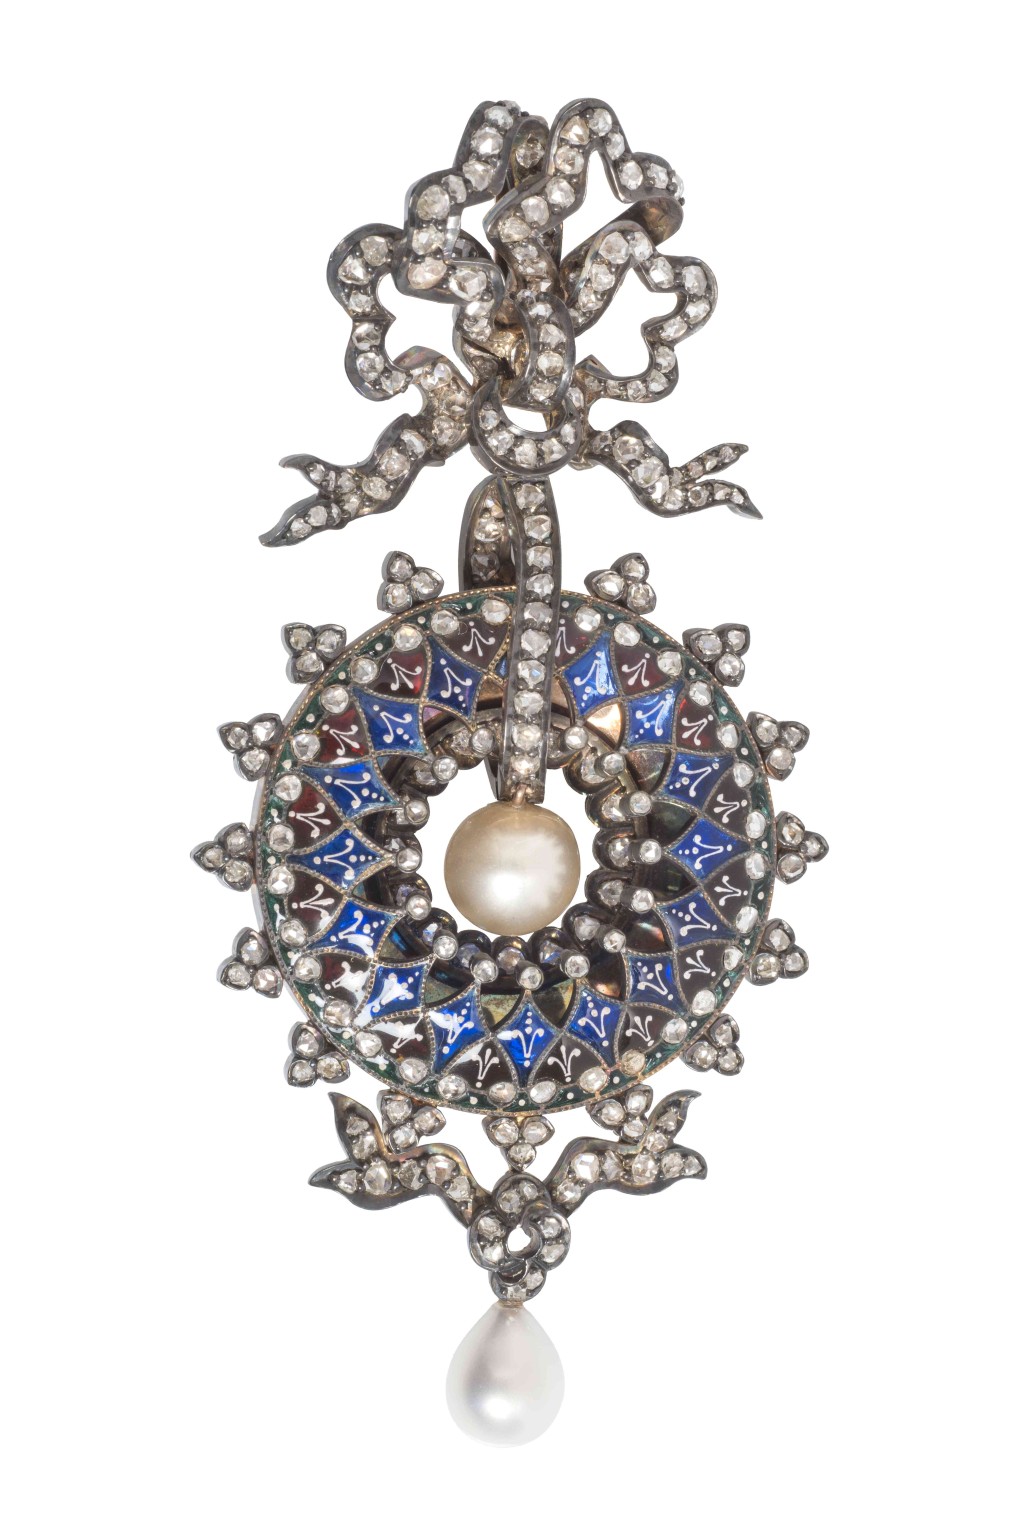 展品中包括這一套來自法國百年珠寶品牌寶詩龍（Boucheron）的耳環及吊墜 （約1878年）。